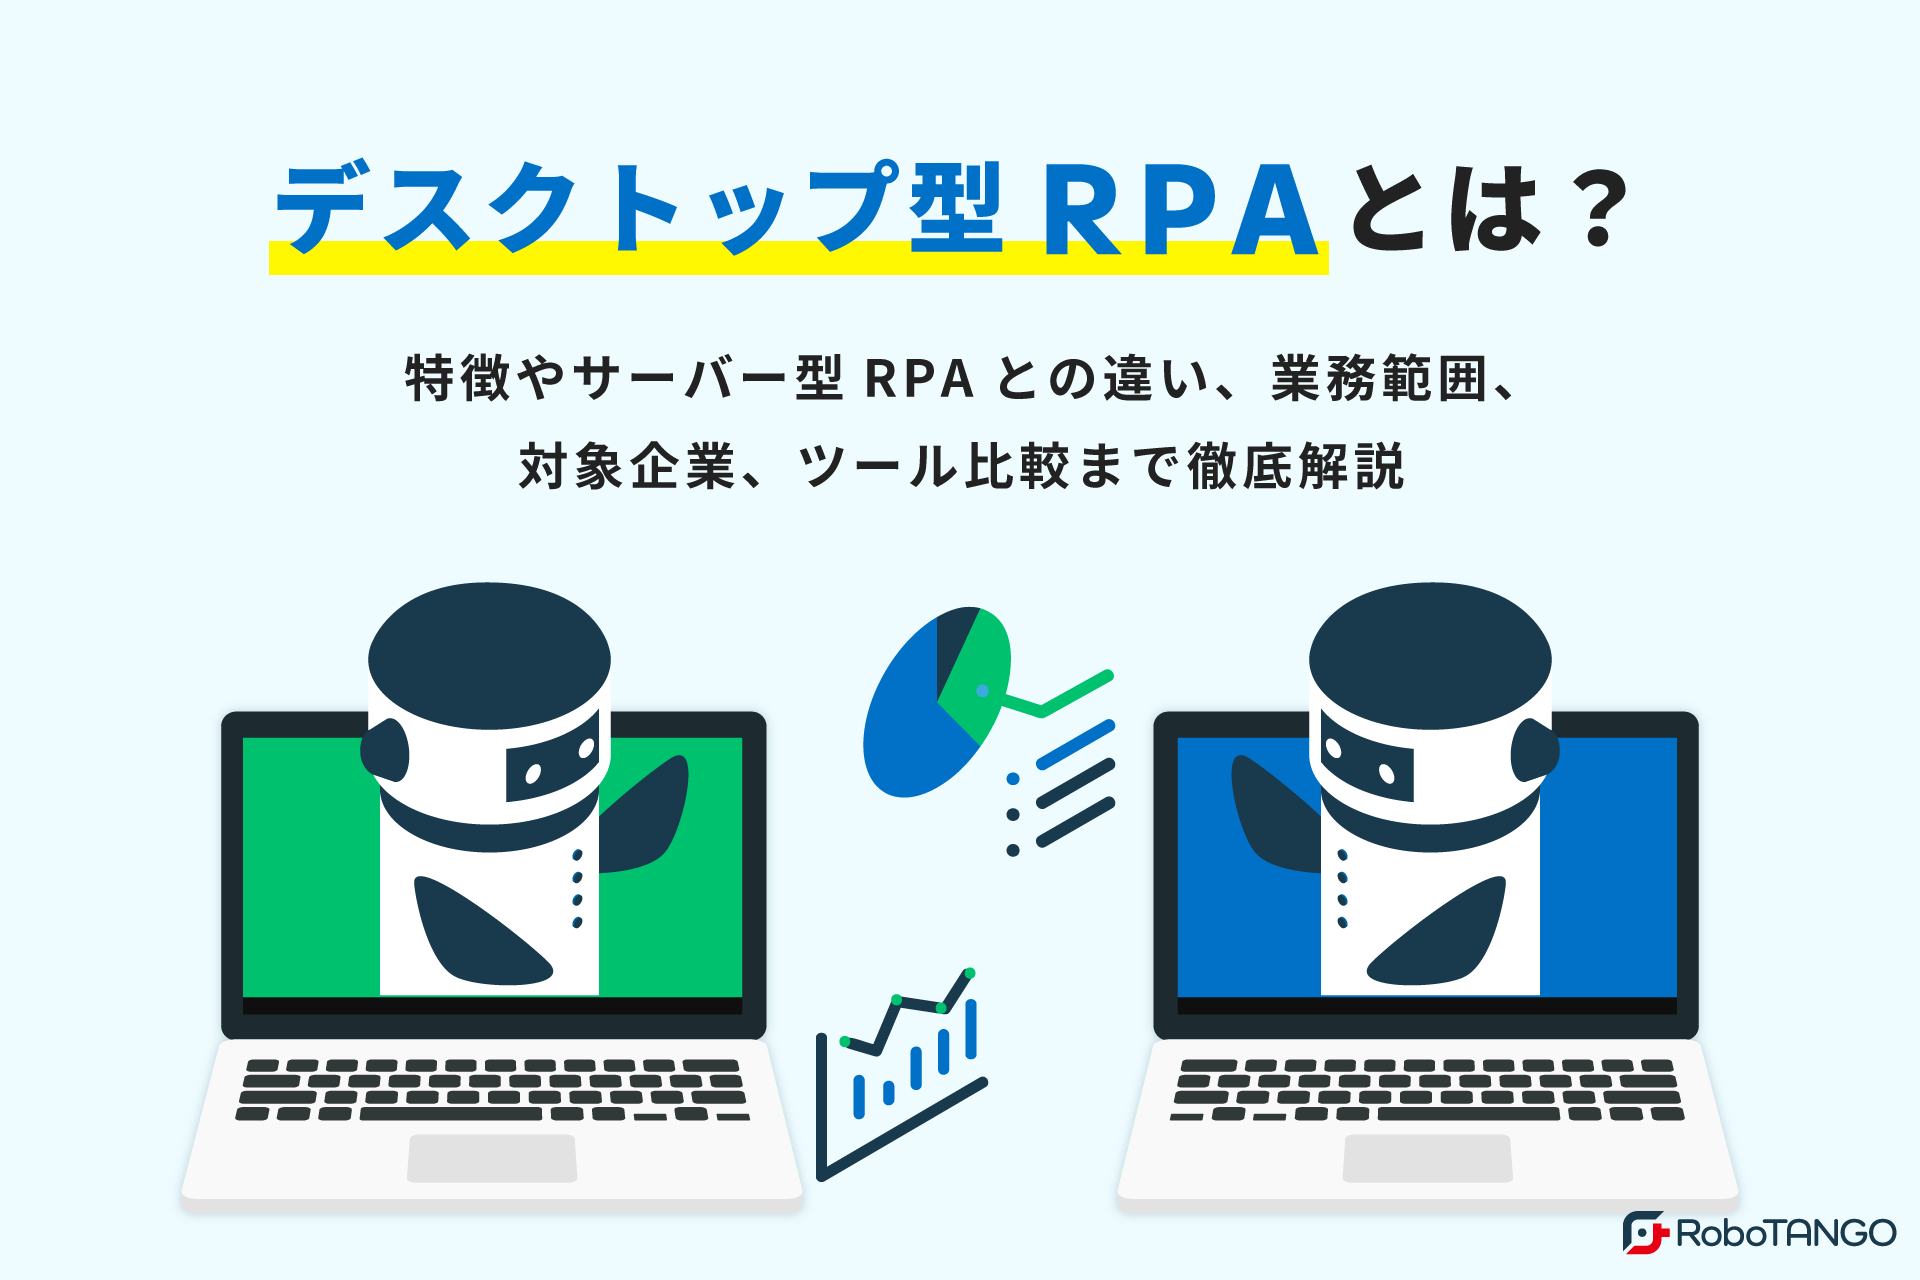 デスクトップ型RPAとは？特徴やサーバー型RPAとの違い、業務範囲、対象企業、ツール比較まで徹底解説